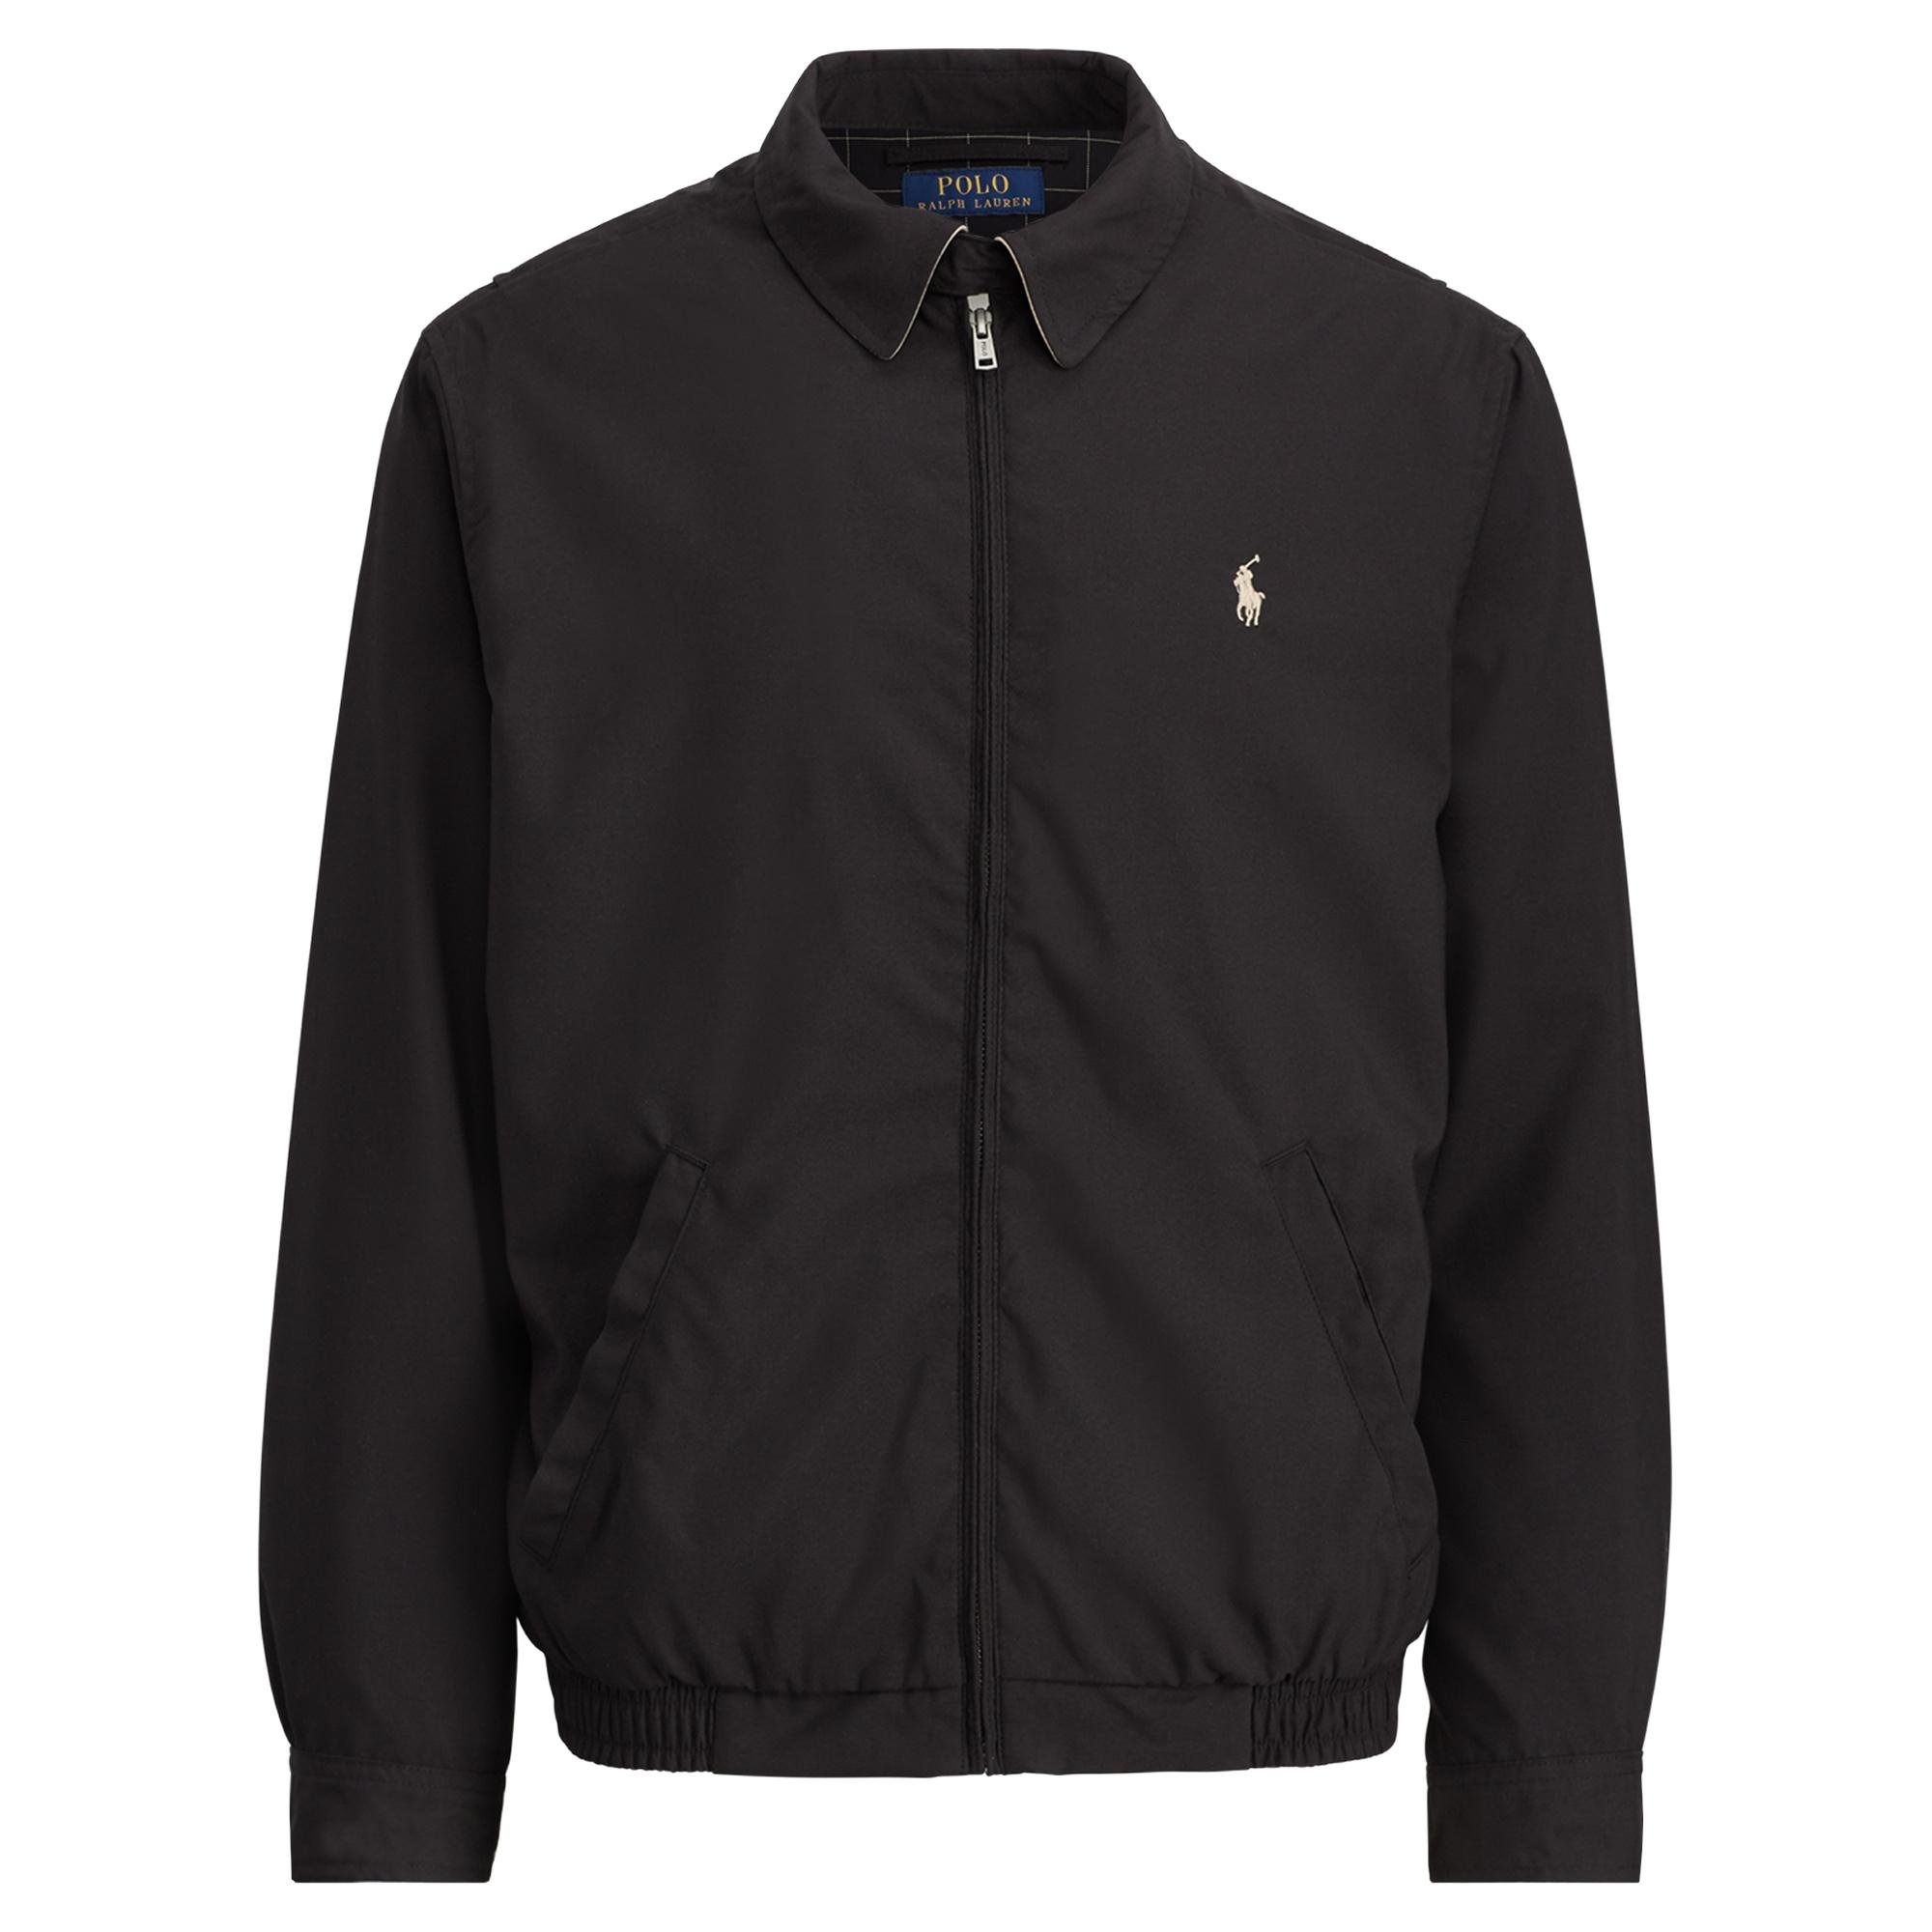 Polo Ralph Lauren Denim Bi-swing Jacket in rl Black (Black) for Men - Lyst